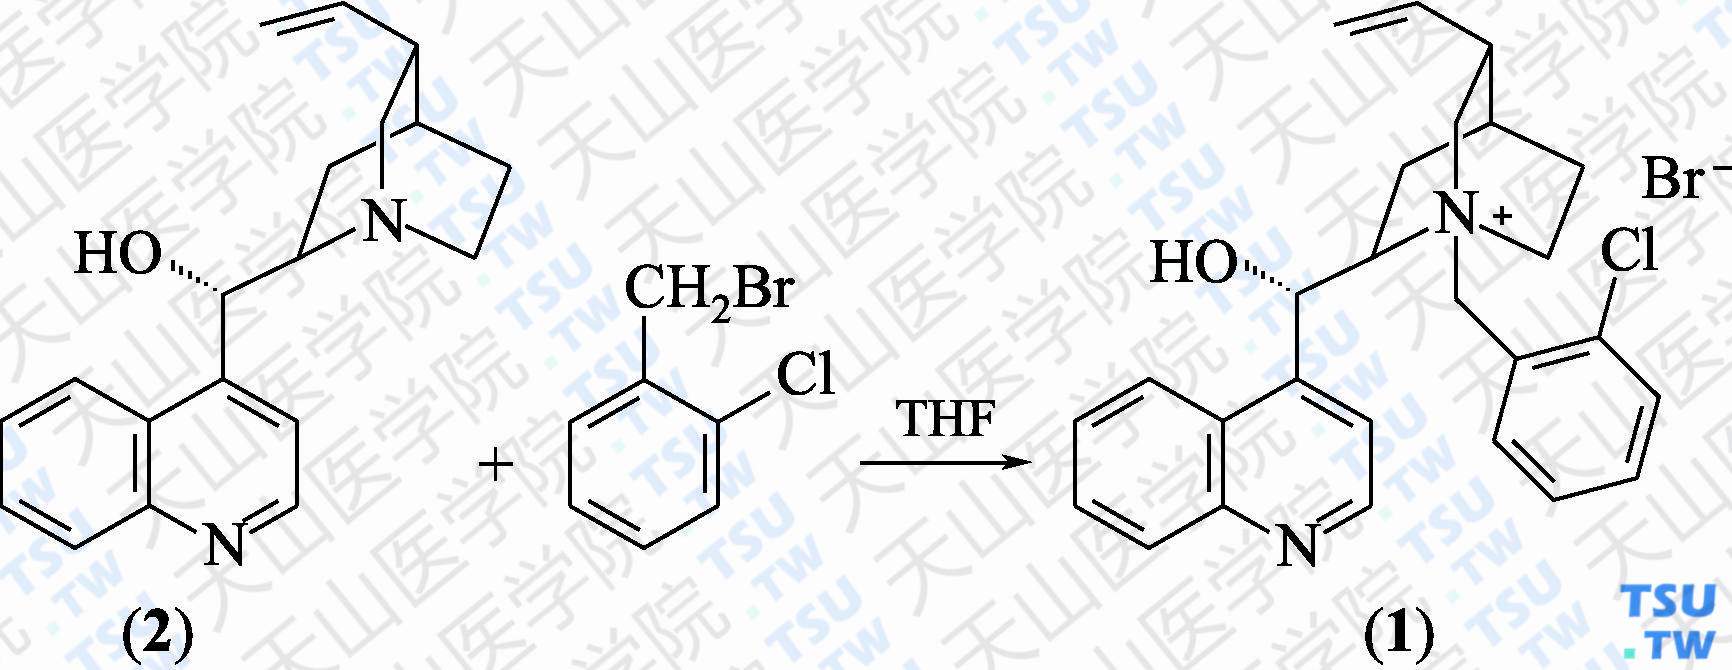 辛可宁邻氯苄基溴化铵（分子式：C<sub>26</sub>H<sub>28</sub>BrClN<sub>2</sub>O）的合成方法路线及其结构式